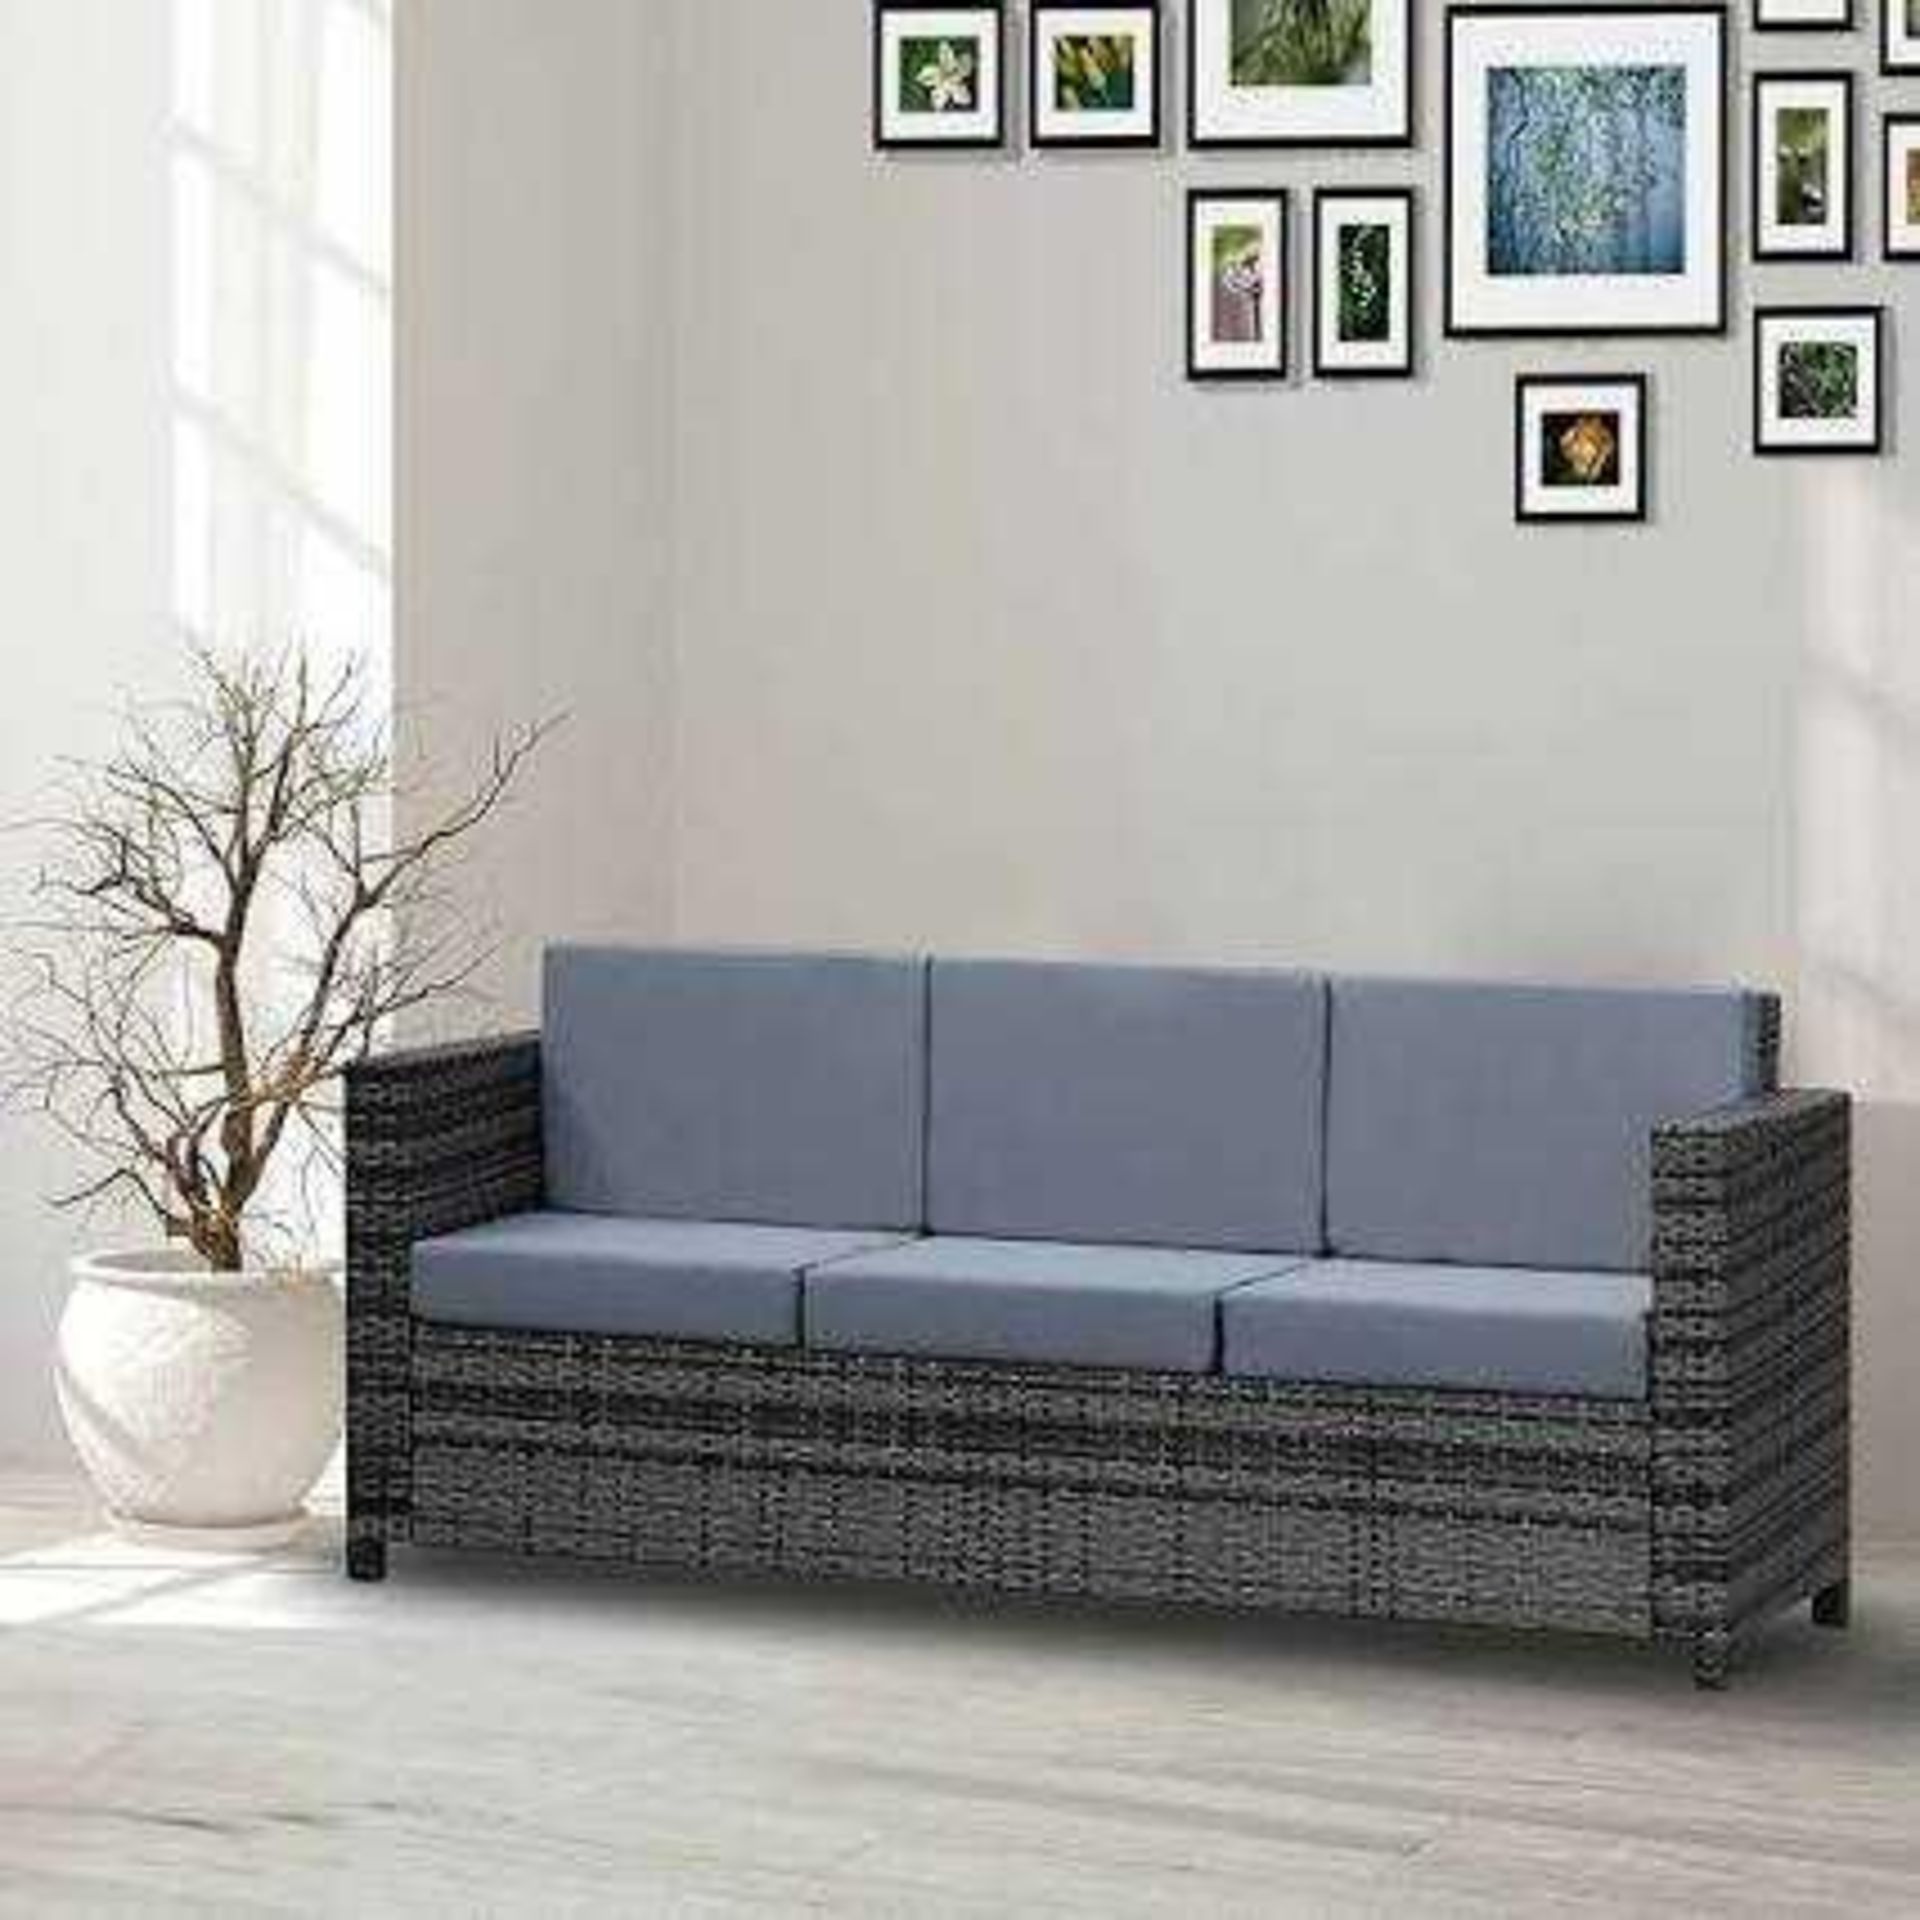 RRP £190 Gennett Outdoor Garden Sofa